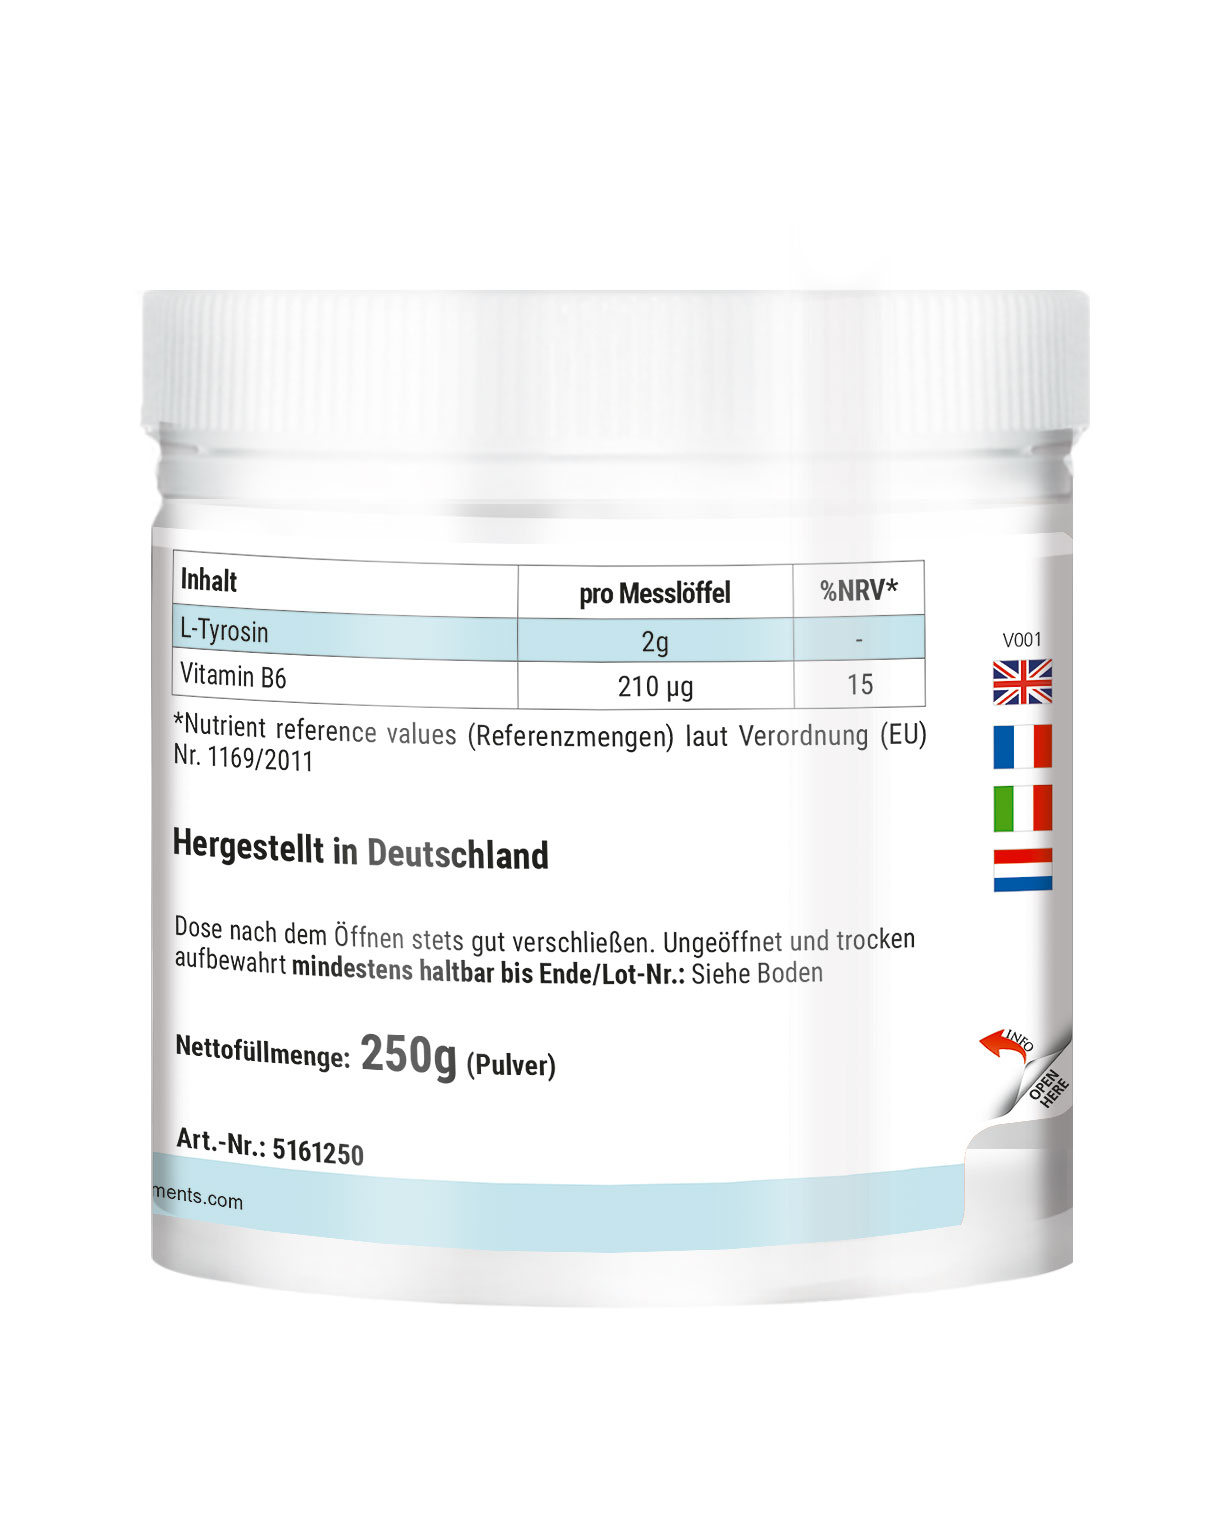 L-Tirosina in polvere 250g + Vitamina B6